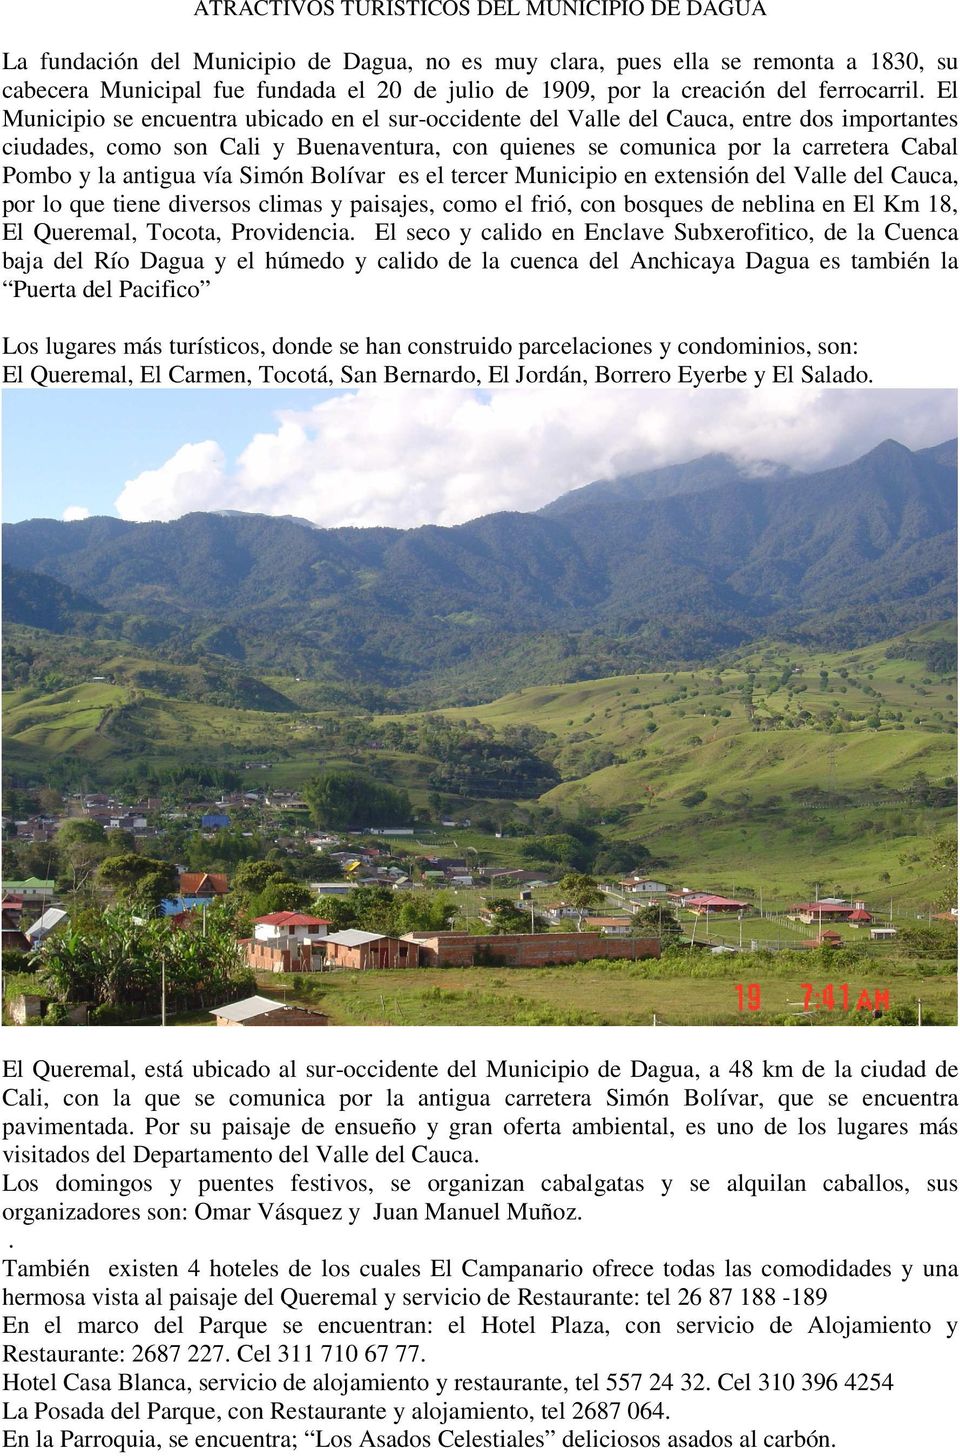 El Municipio se encuentra ubicado en el sur-occidente del Valle del Cauca, entre dos importantes ciudades, como son Cali y Buenaventura, con quienes se comunica por la carretera Cabal Pombo y la